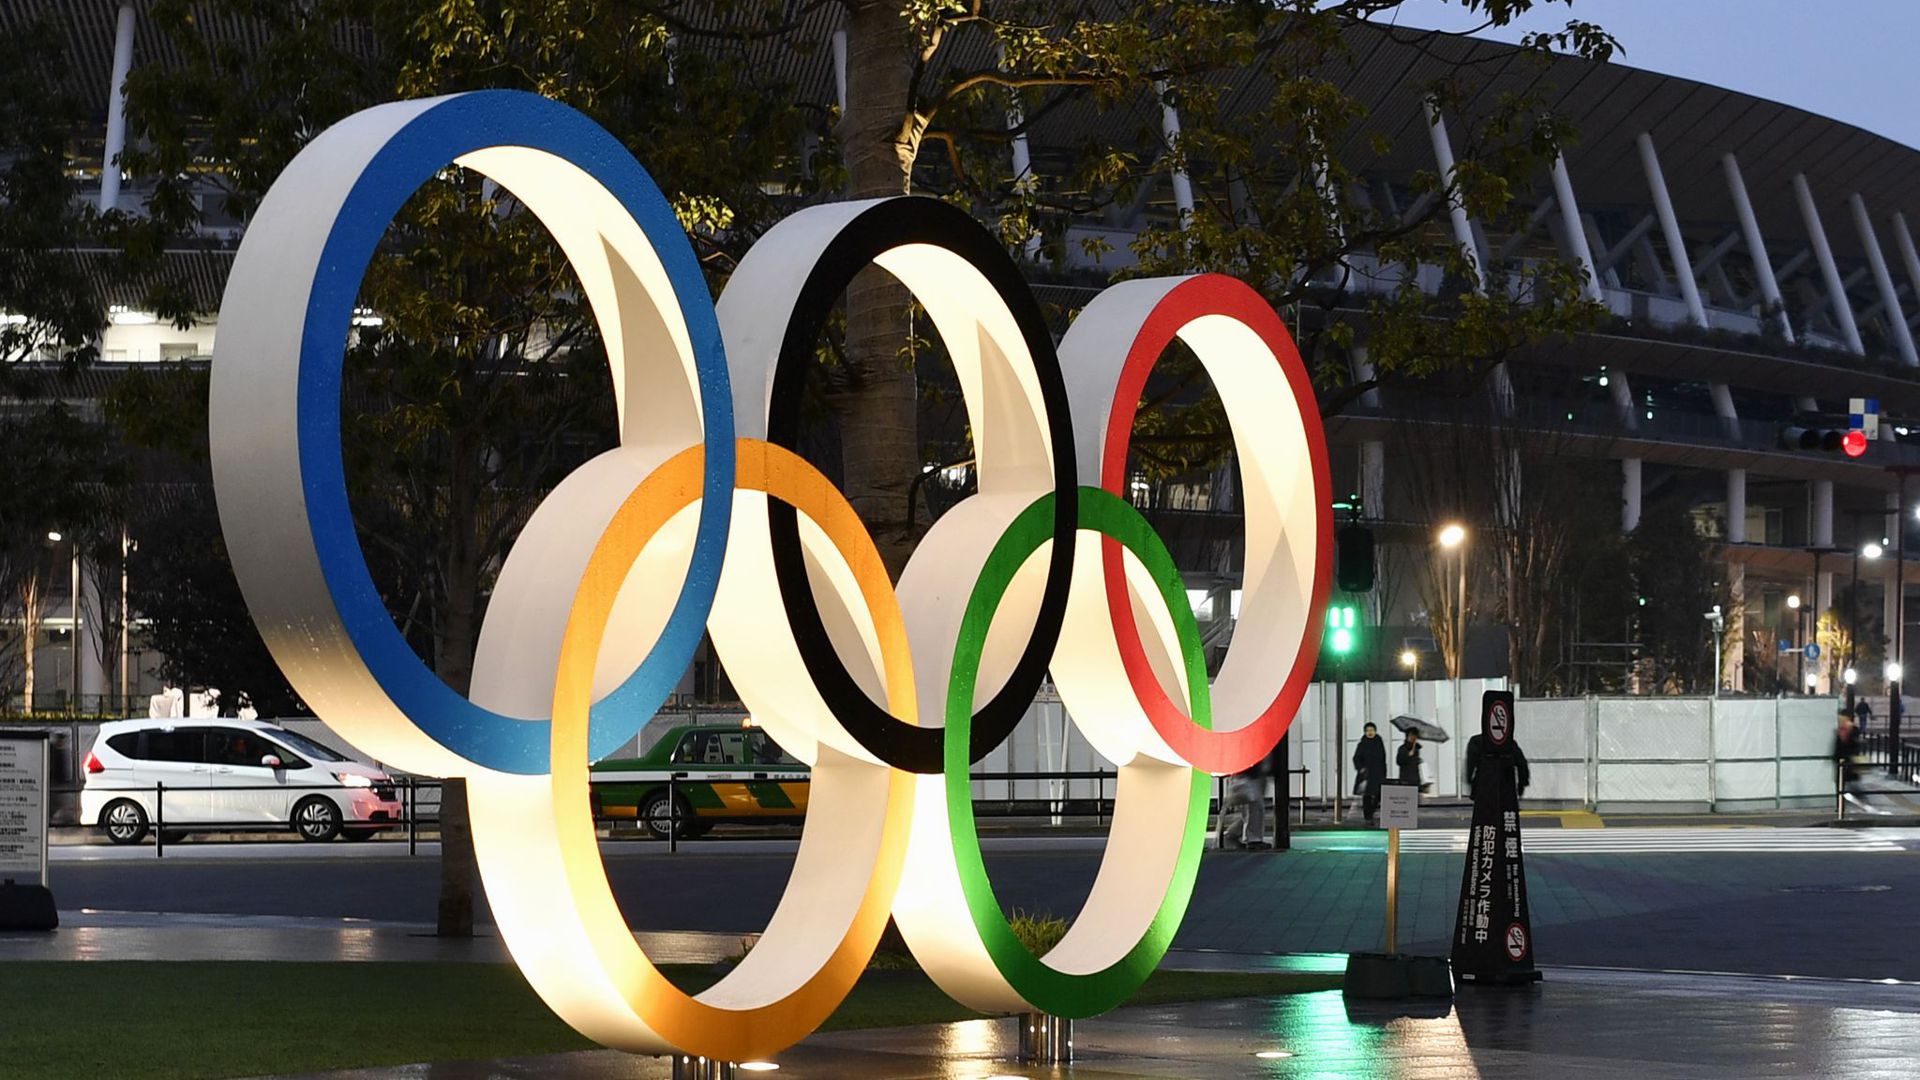 Klappt das: Olympischen Spiele trotz Corona-Pandemie?